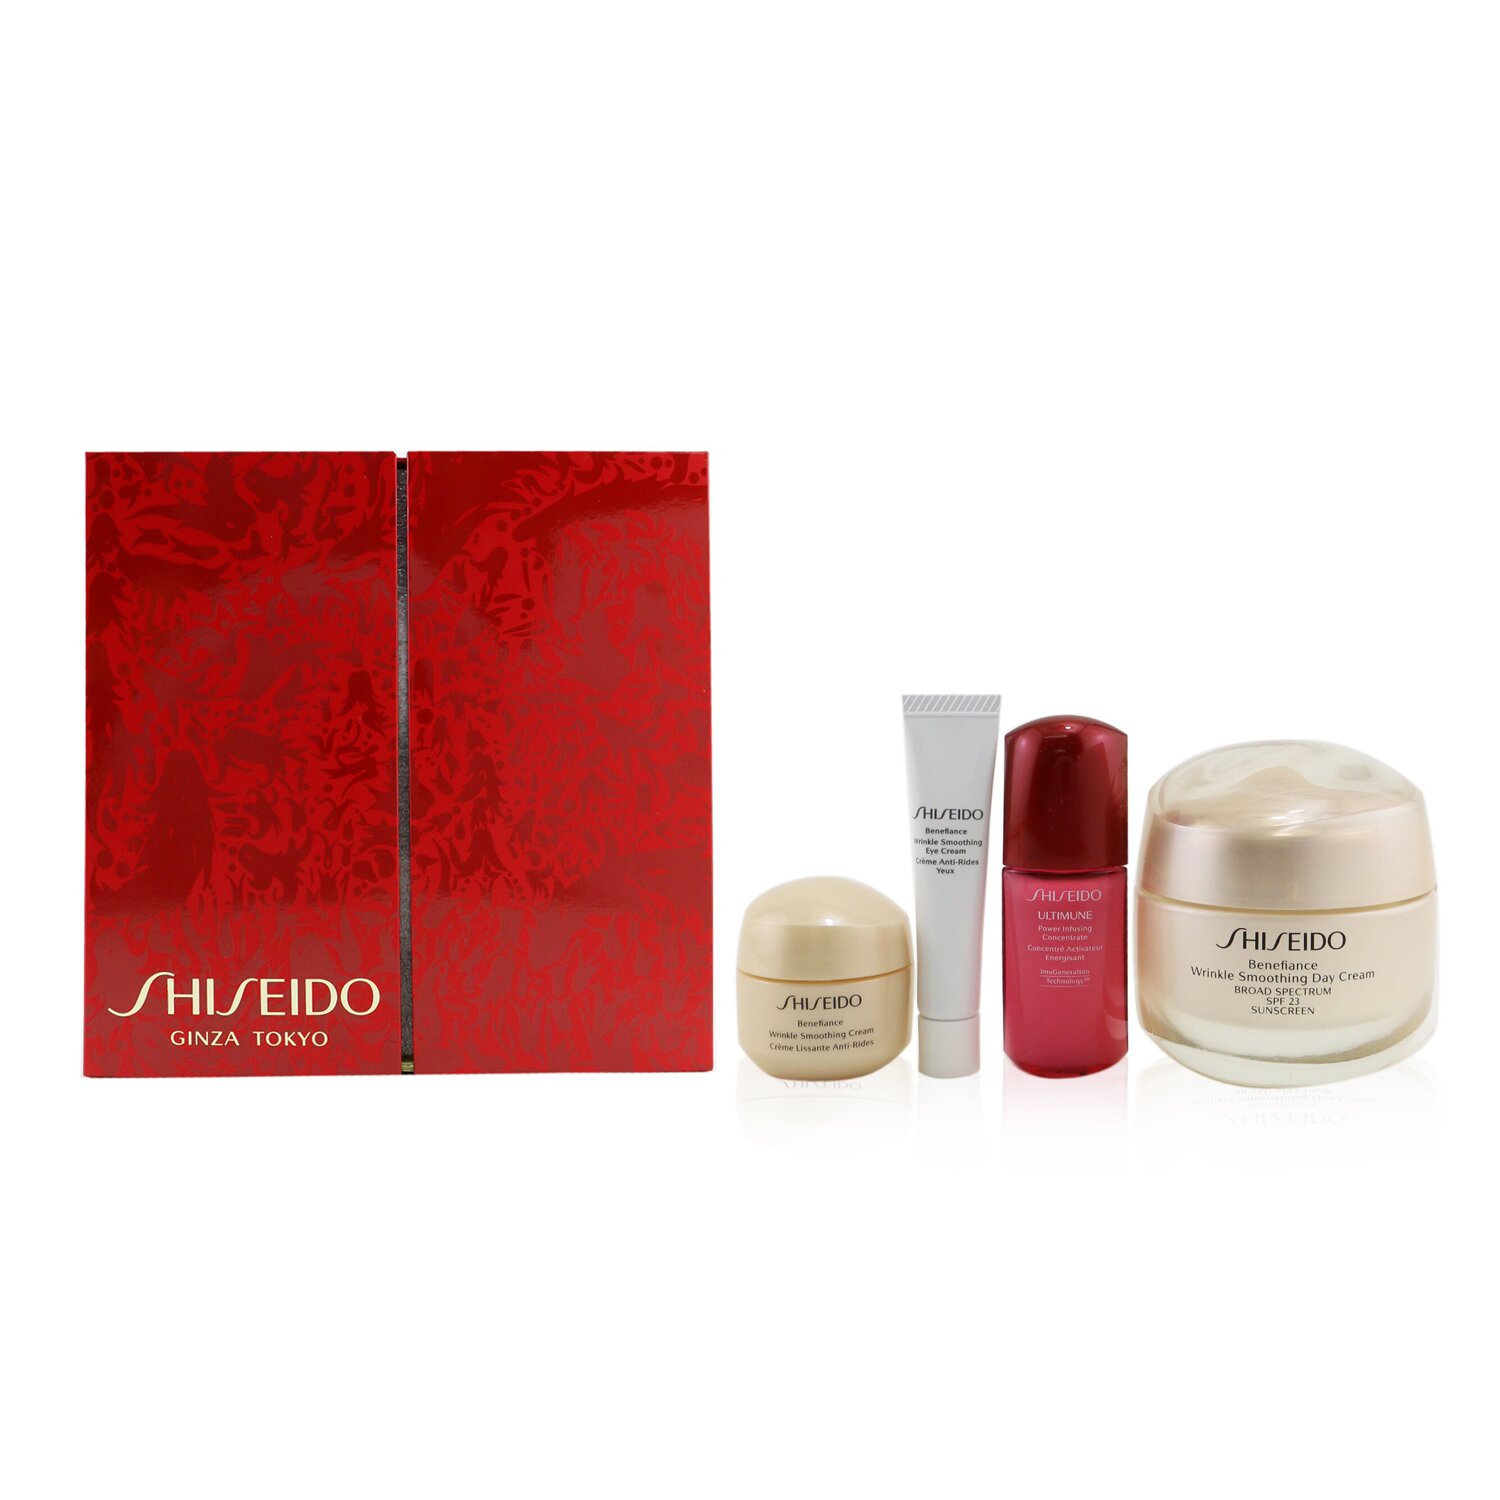 Shiseido Set Smooth Skin Sensations: Benefiance Crema de Día SPF23 50ml + Ultimune Concentrado 10ml + Benefiance Crema Suavizante 15ml + Benefiance Crema de Ojos 5ml 4pcs